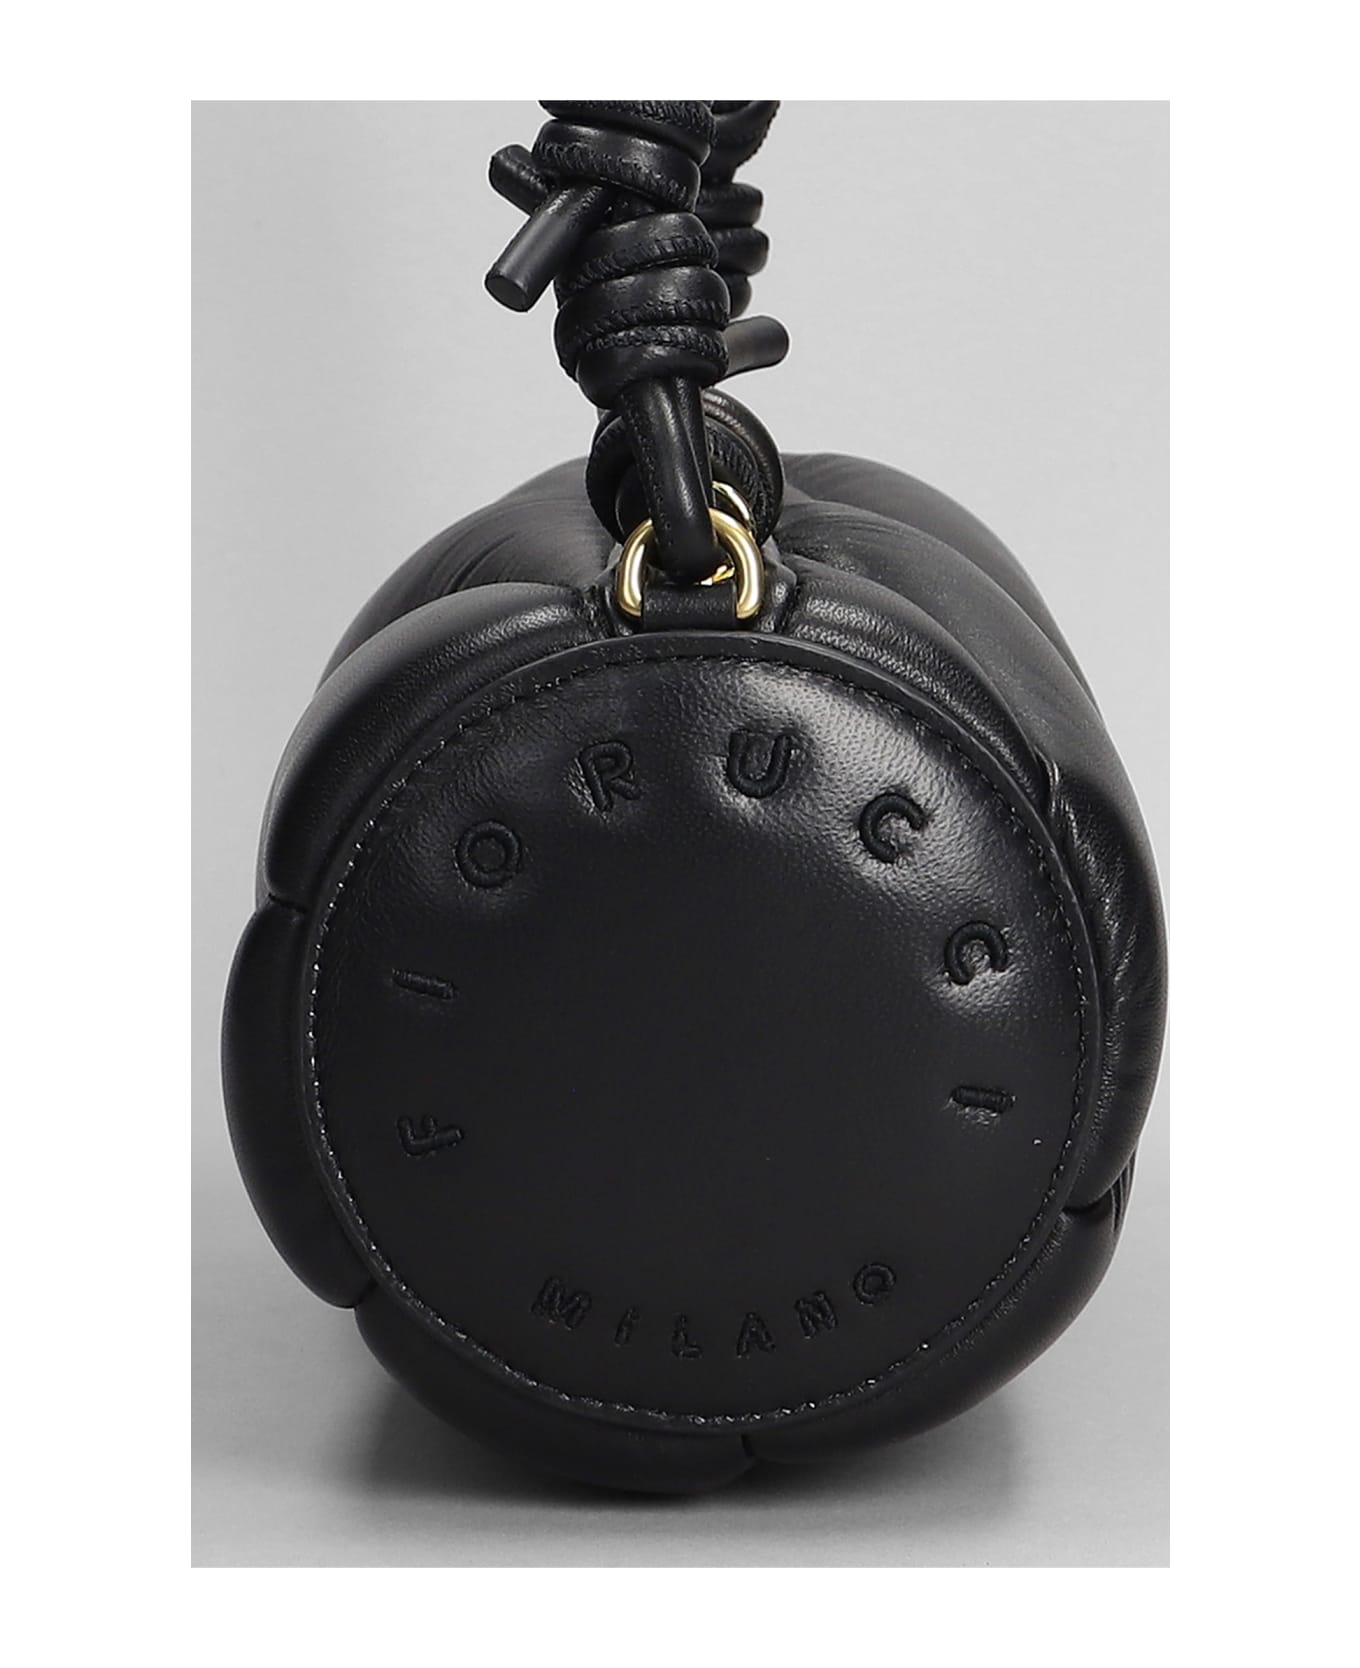 Fiorucci Mella Bag Shoulder Bag In Black Leather - black